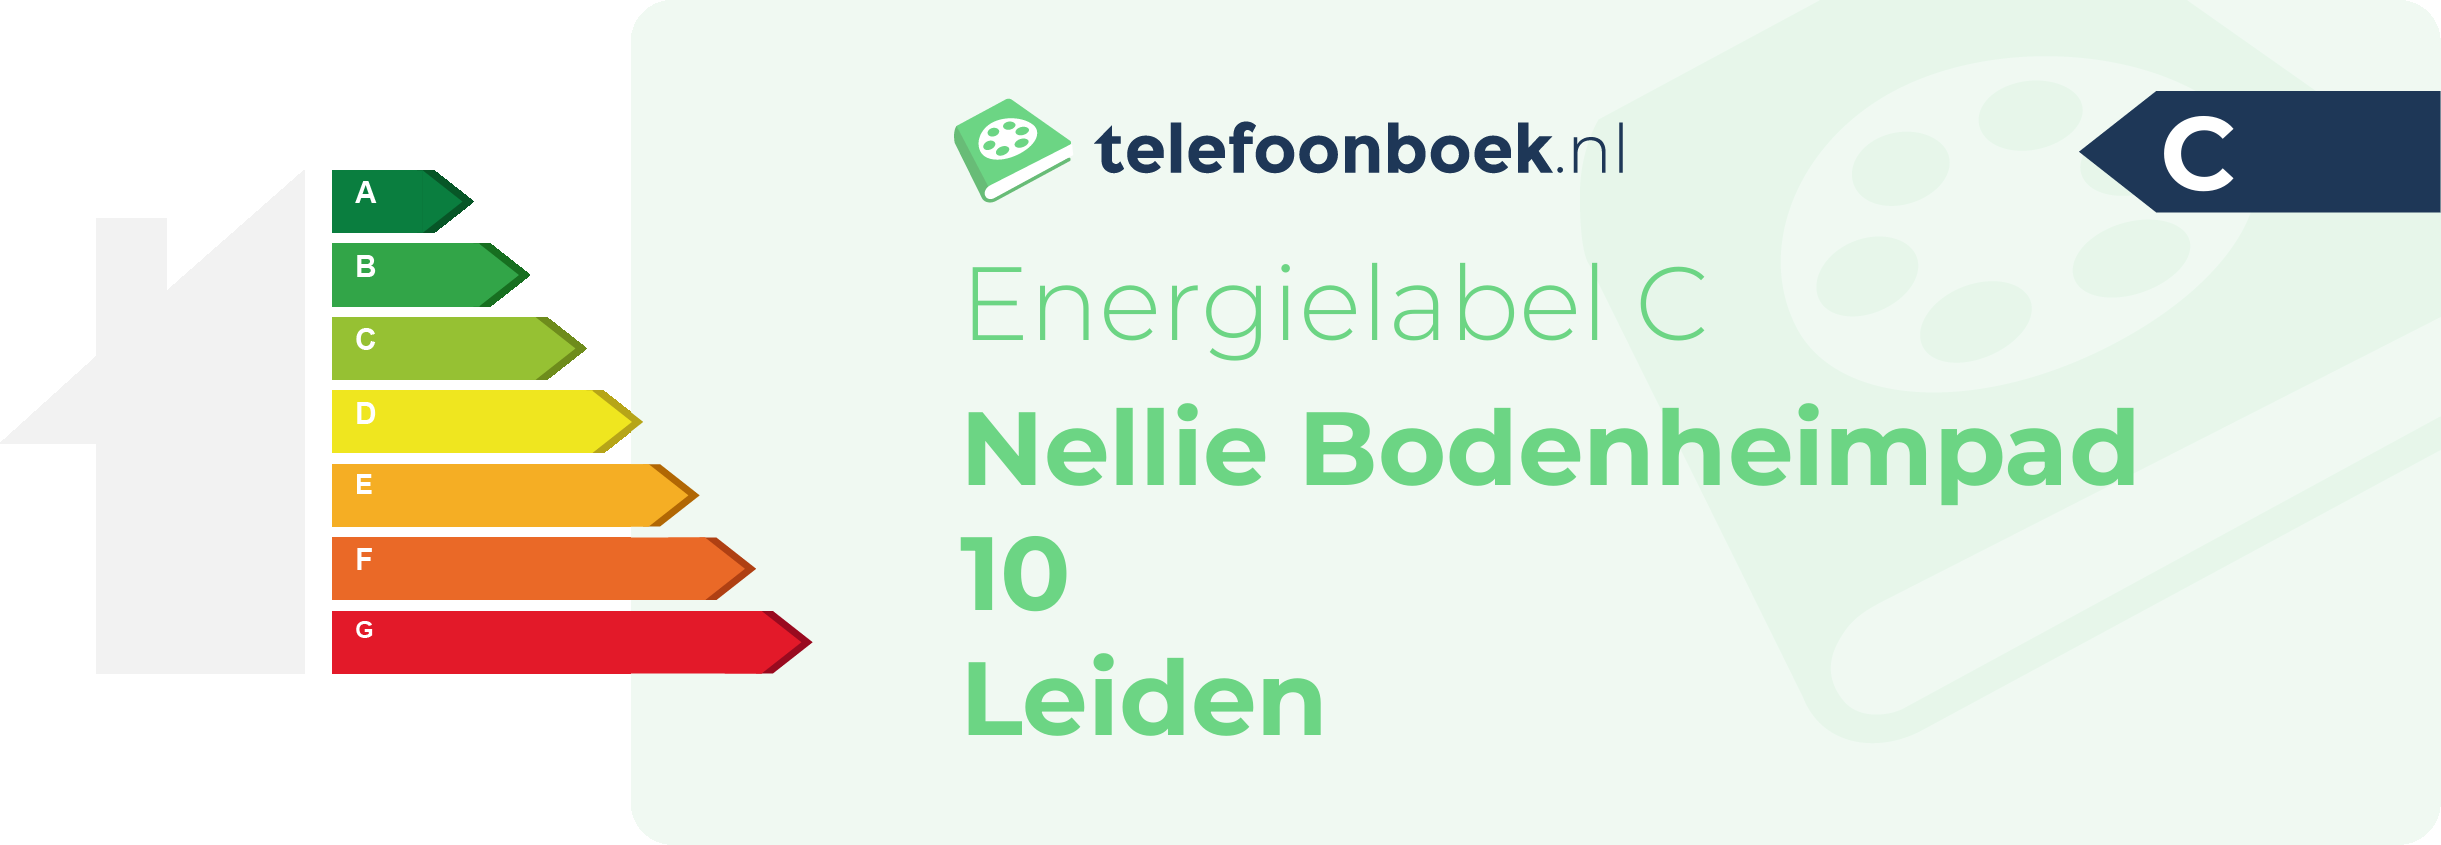 Energielabel Nellie Bodenheimpad 10 Leiden